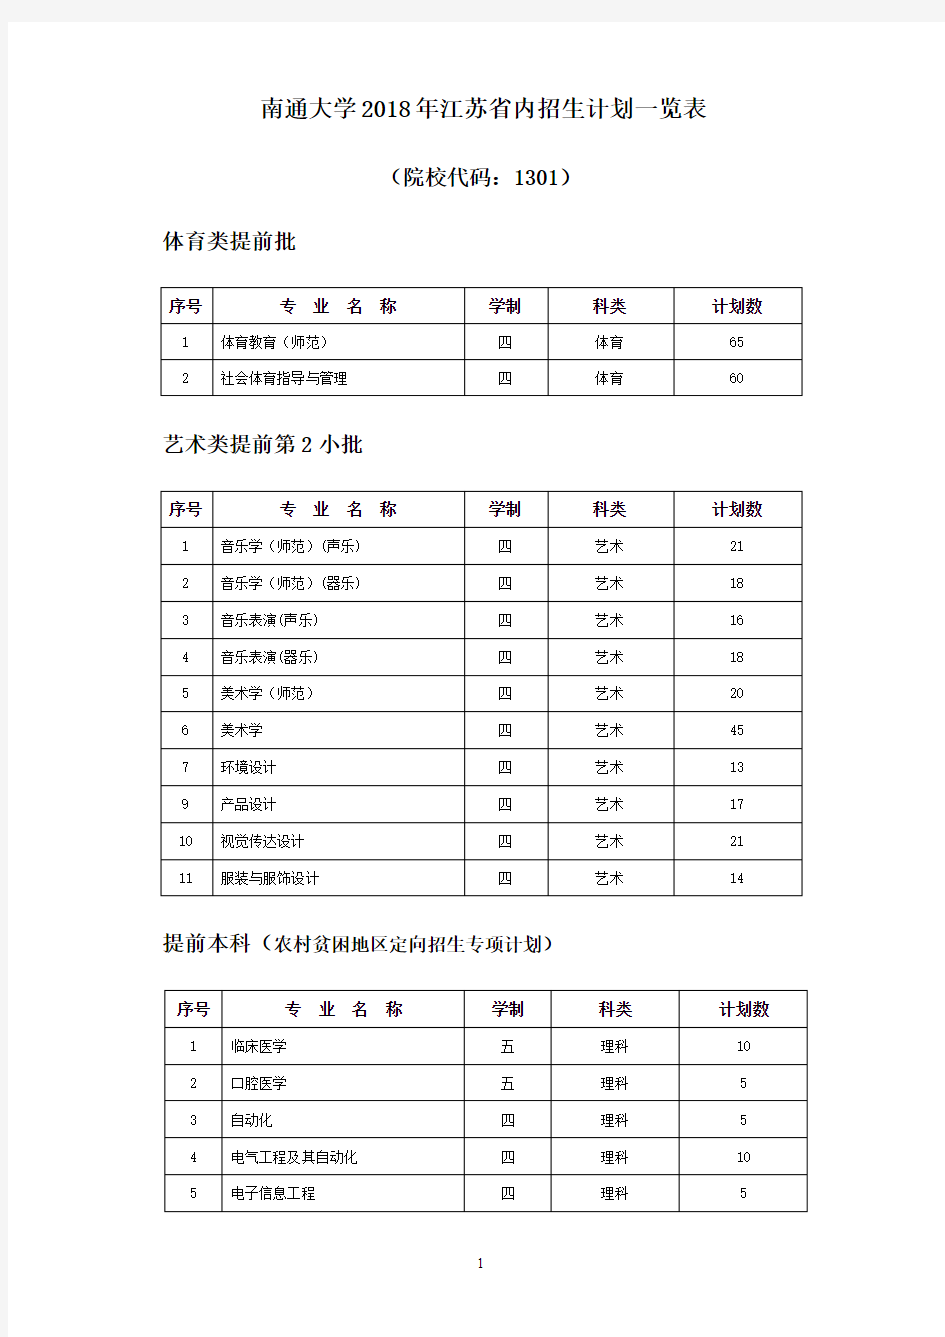 南通大学2018年江苏省内招生计划一览表